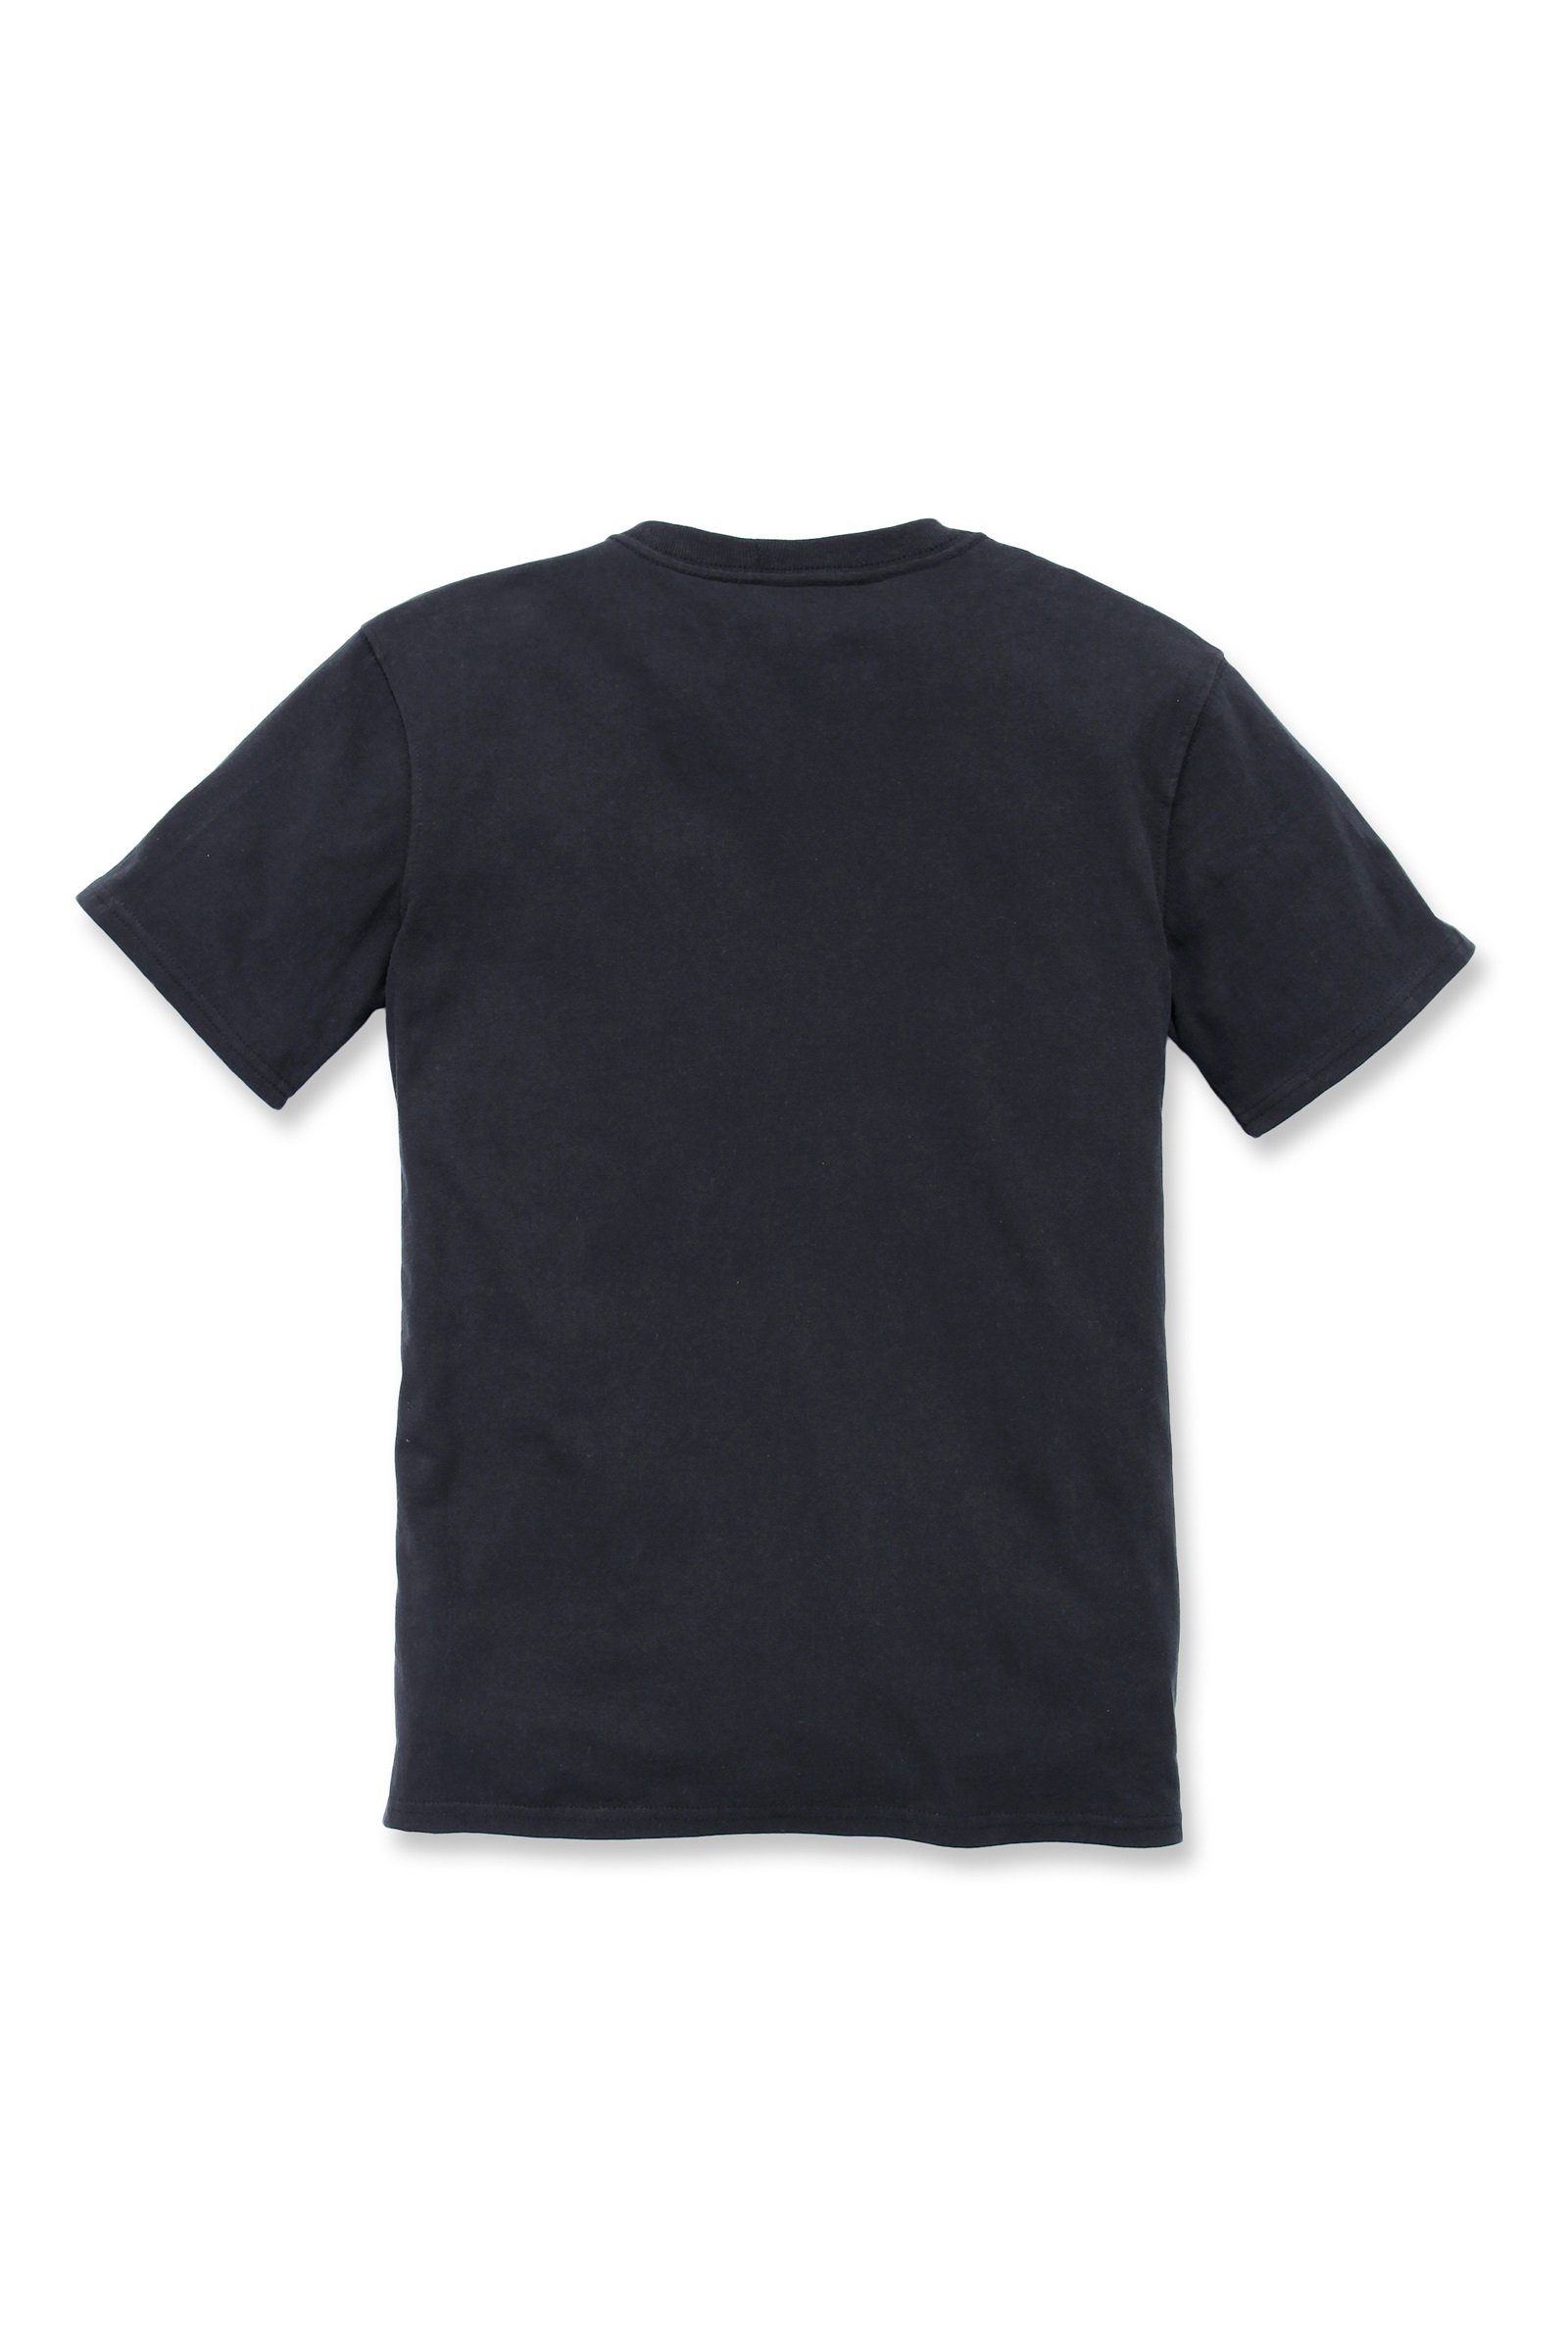 Loose Carhartt Fit T-Shirt Pocket Damen Adult T-Shirt black Heavyweight Short-Sleeve Carhartt